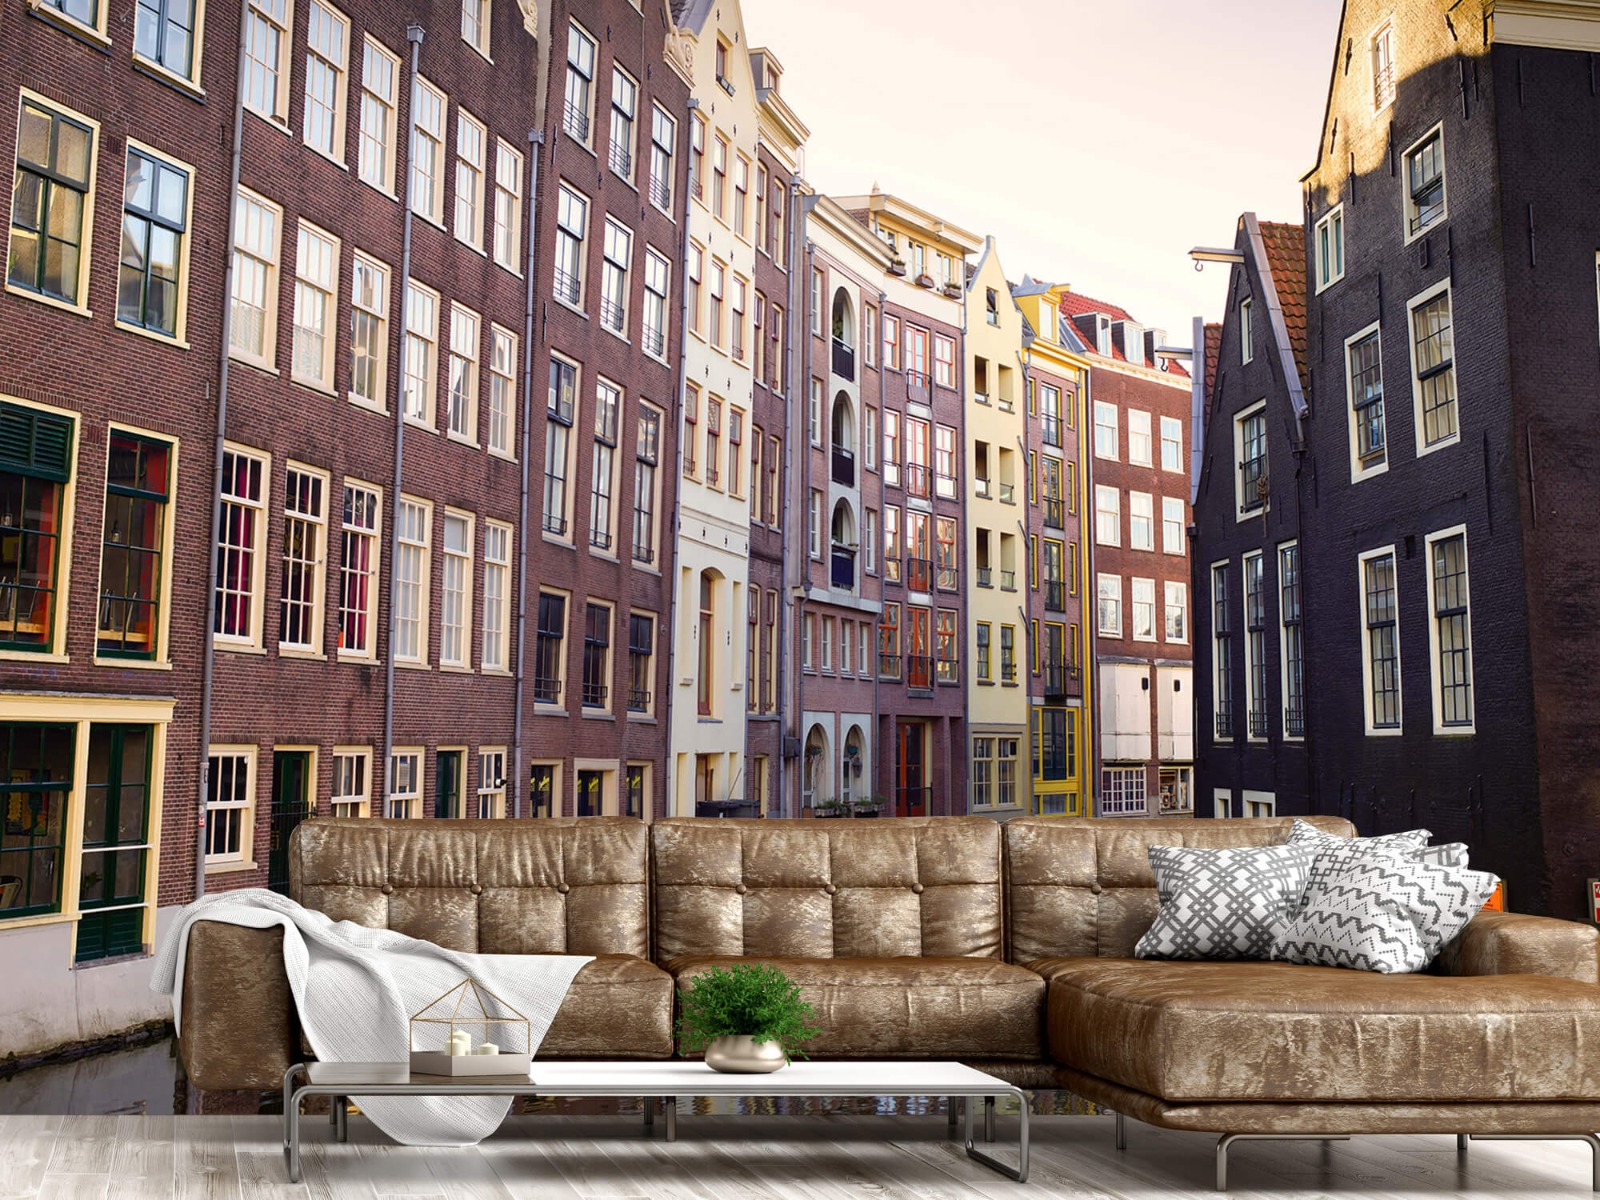 Gebouwen - Amsterdamse huizen aan de gracht - Tienerkamer 15